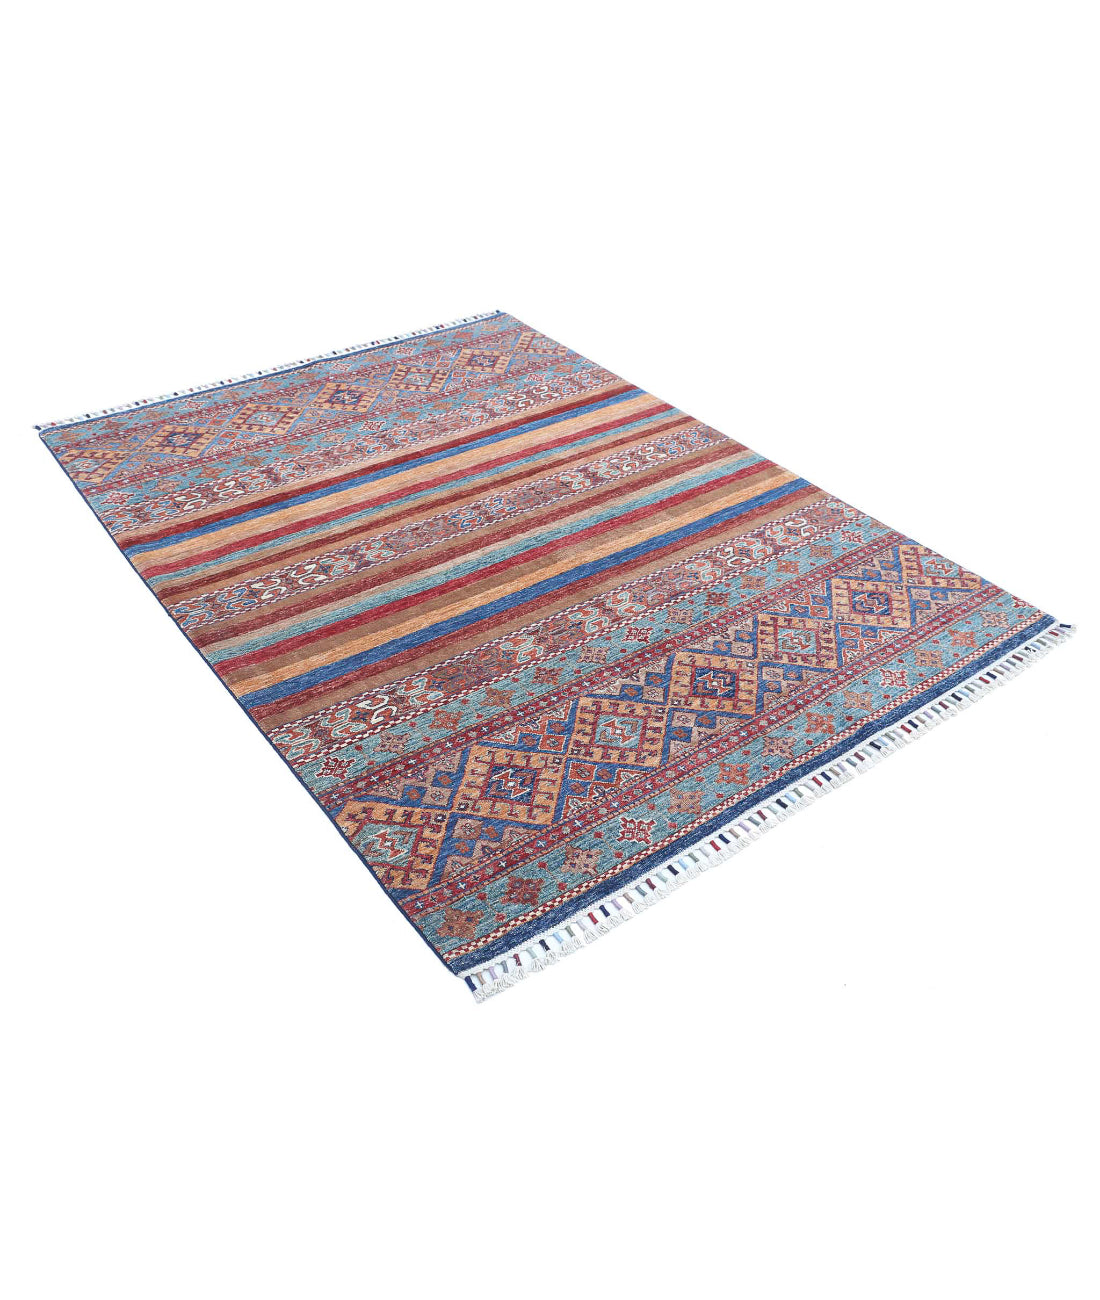 Khurjeel-hand-knotted-farhan-wool-rug-5012940-1.jpg